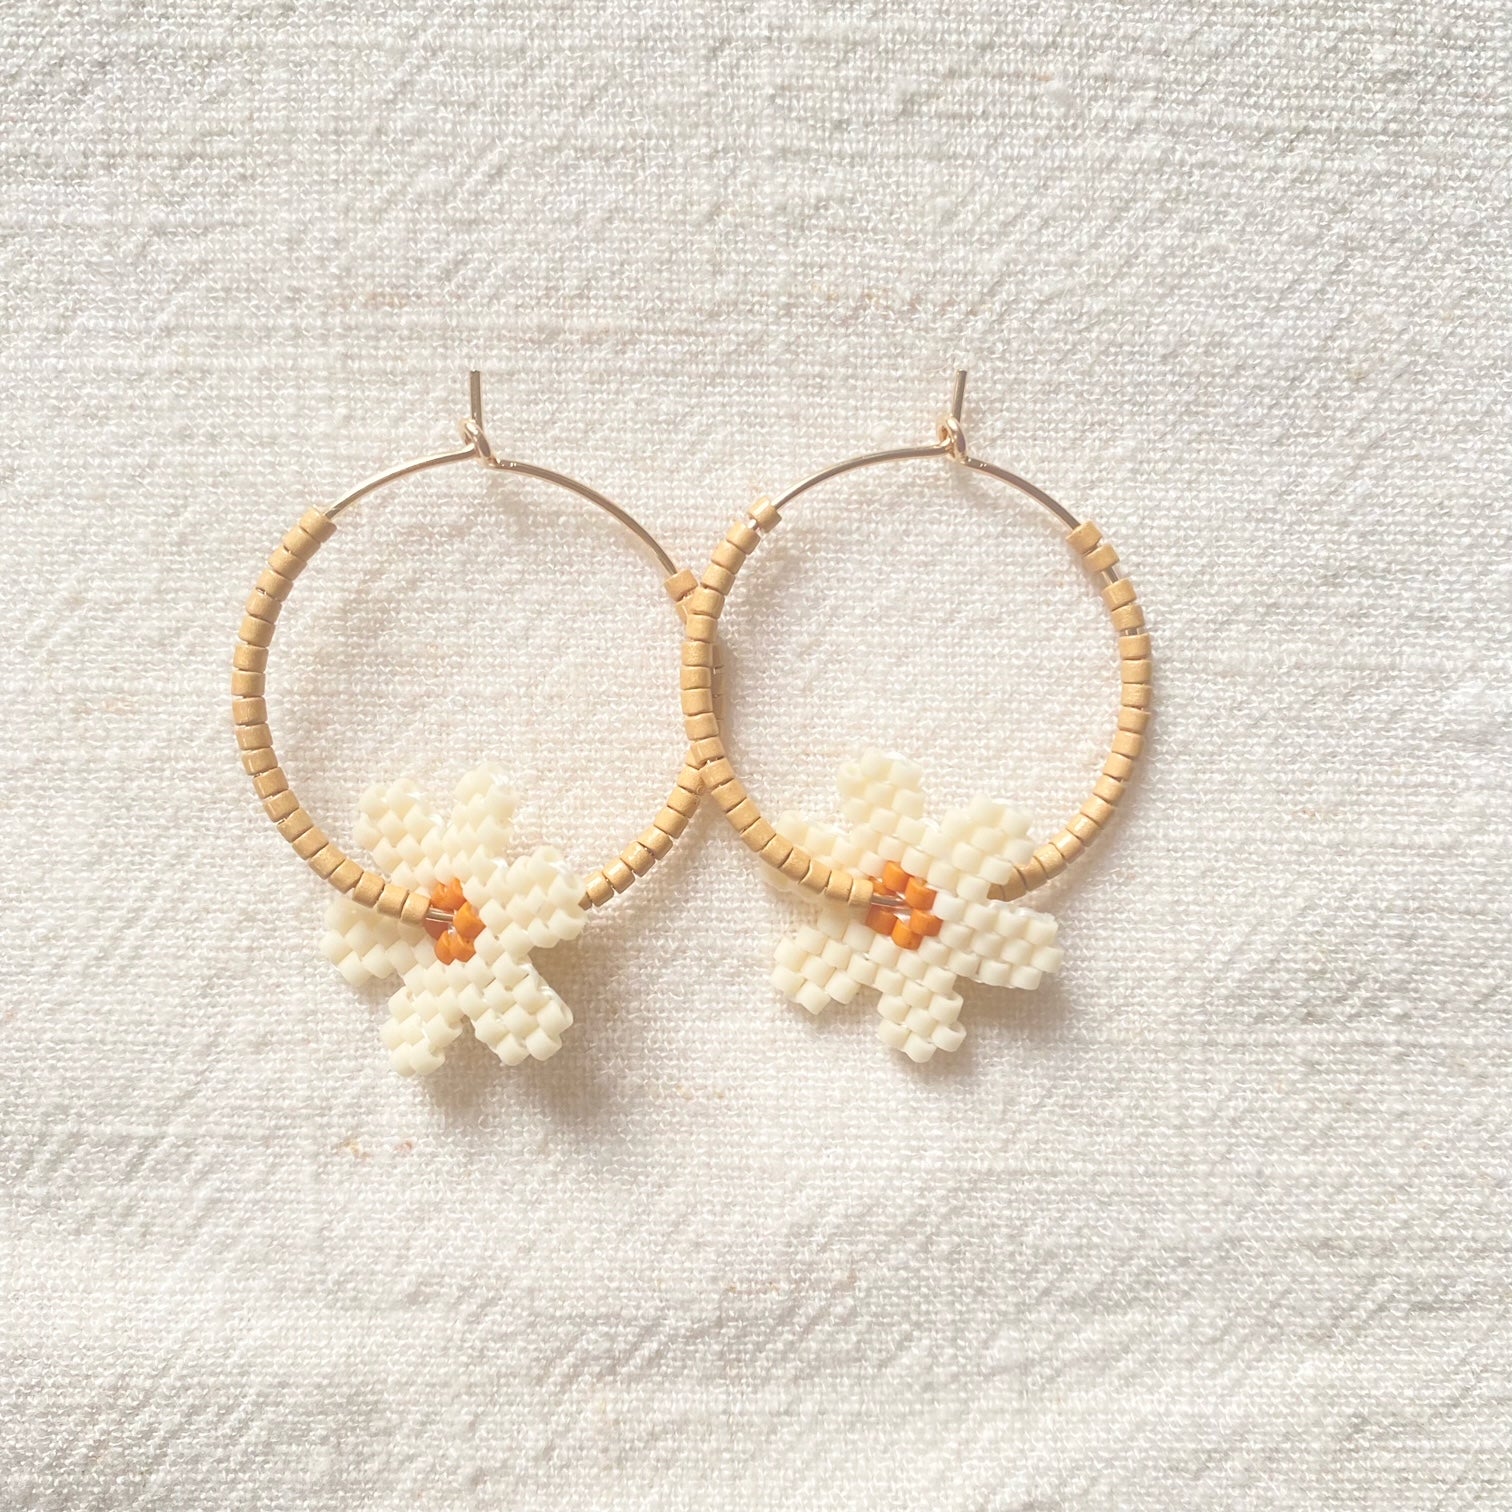 natural beaded flower hoop earrings